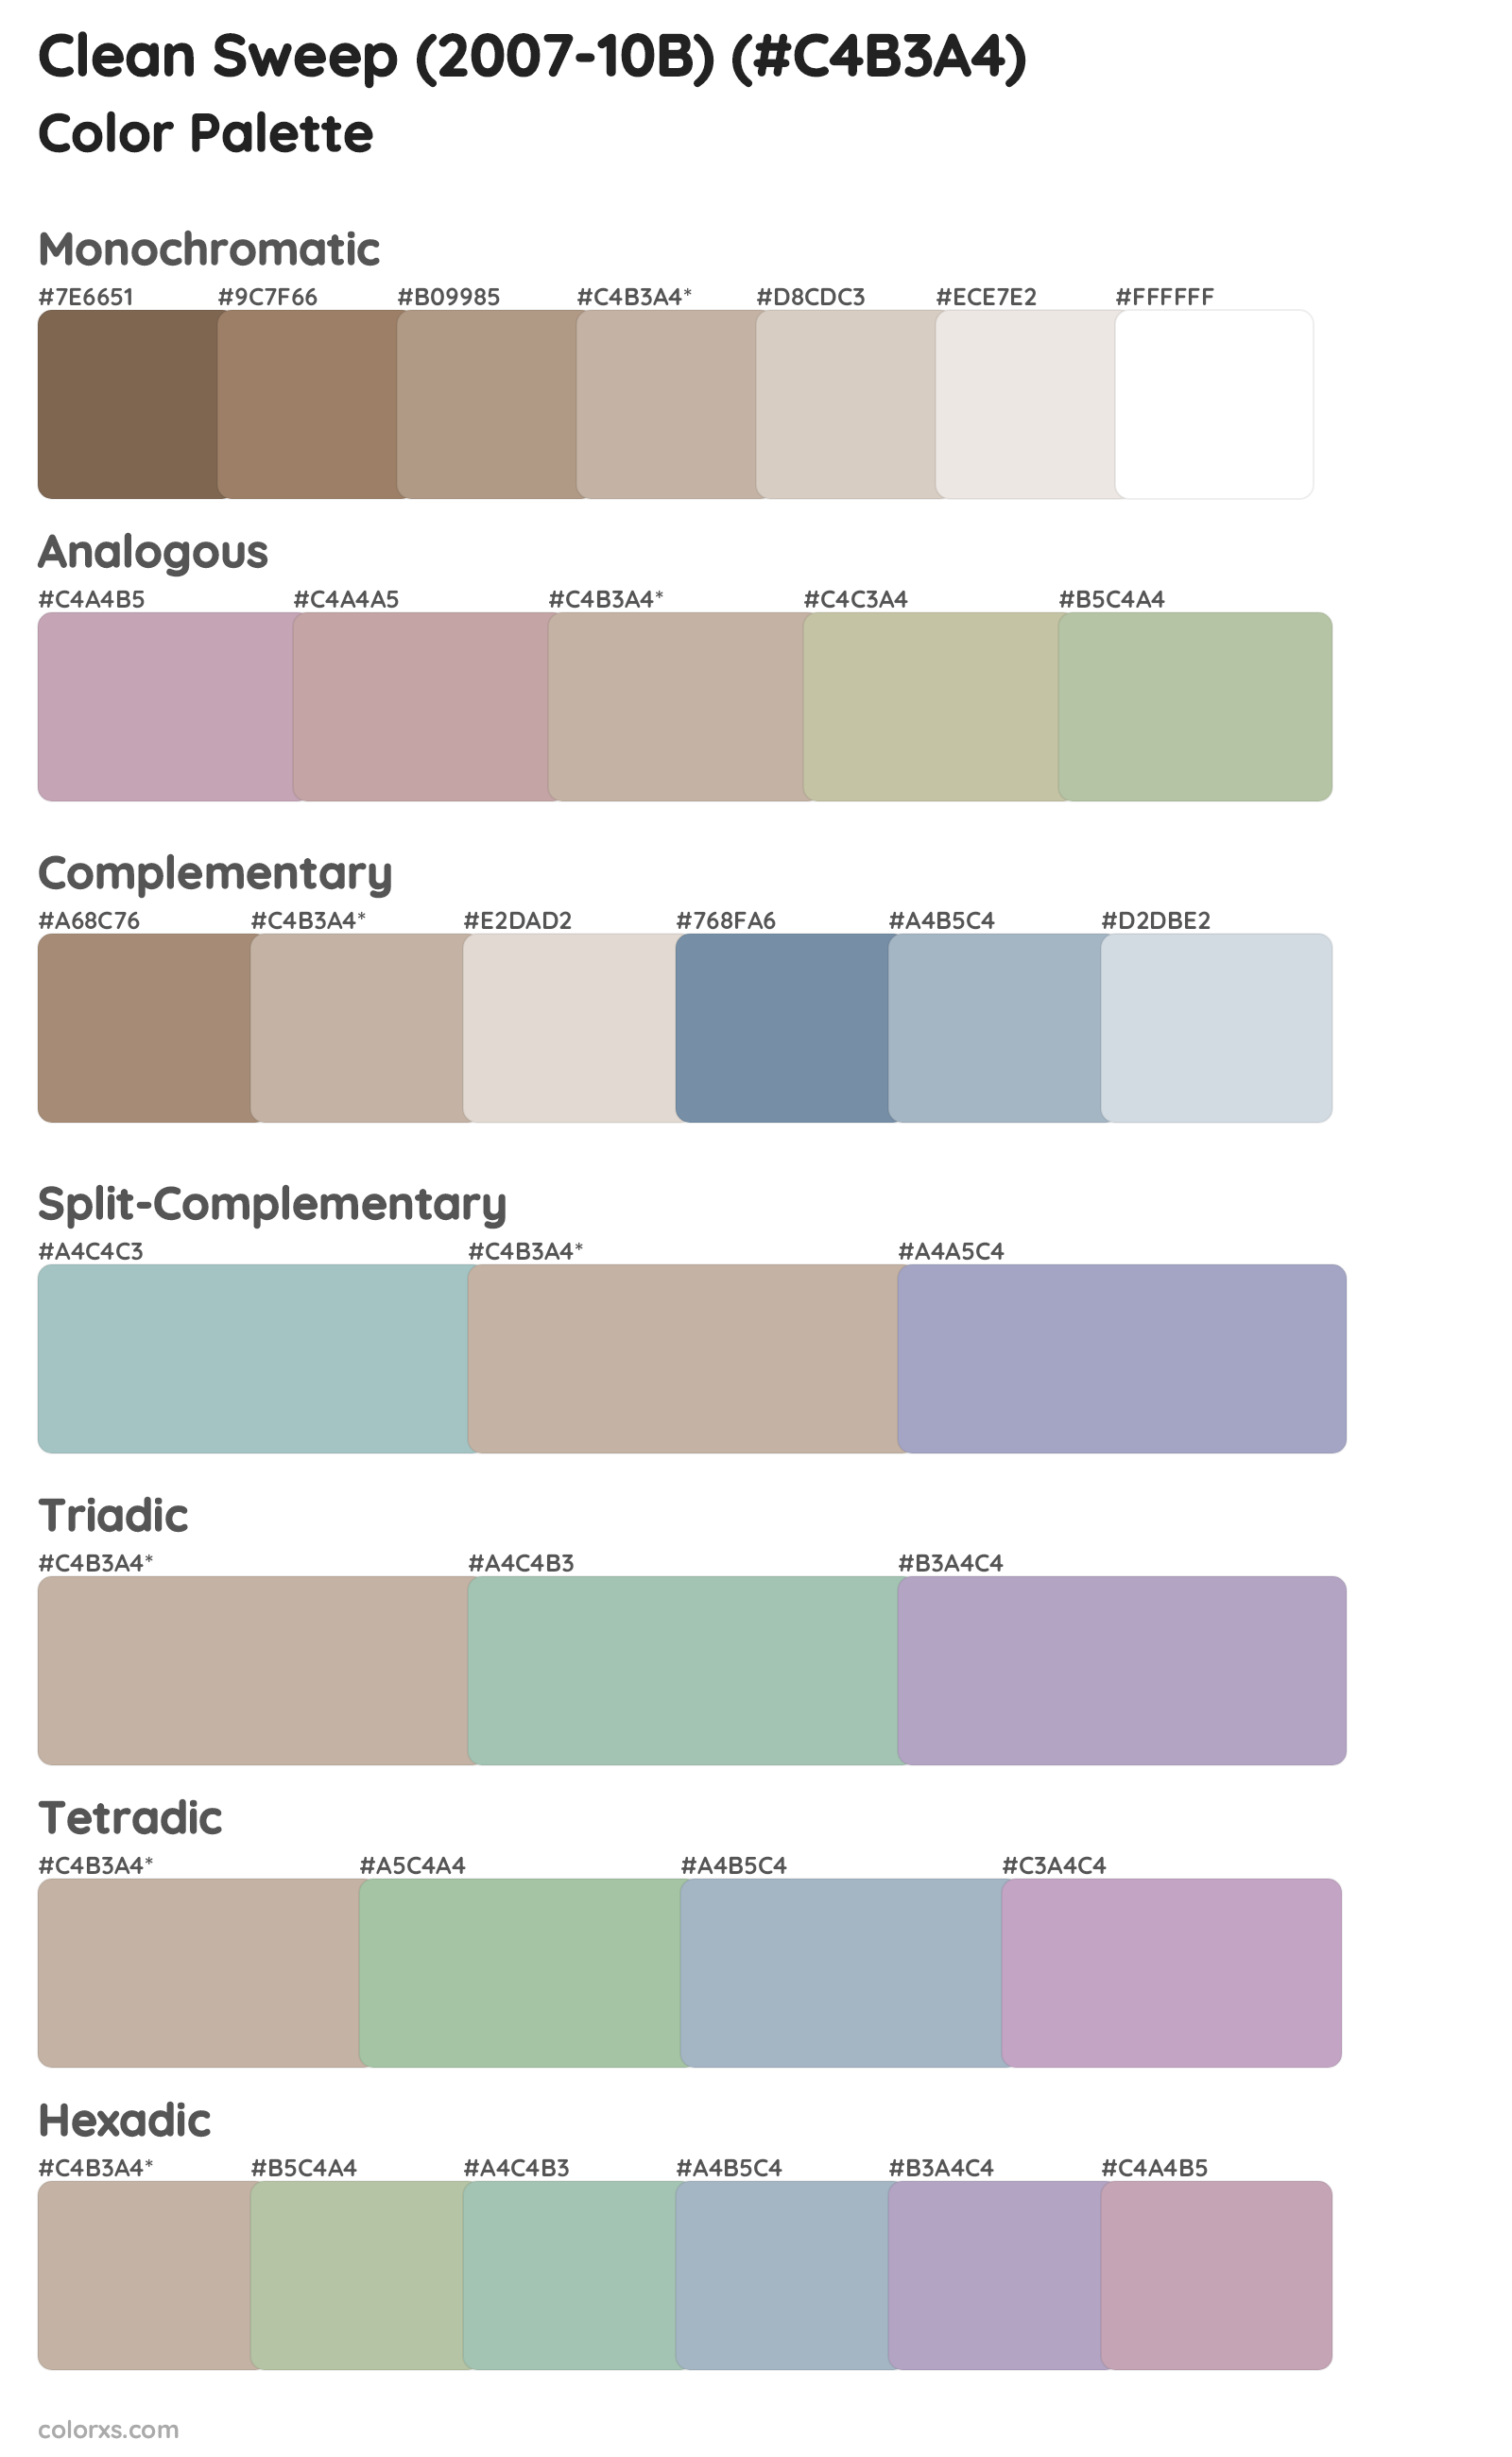 Clean Sweep (2007-10B) Color Scheme Palettes